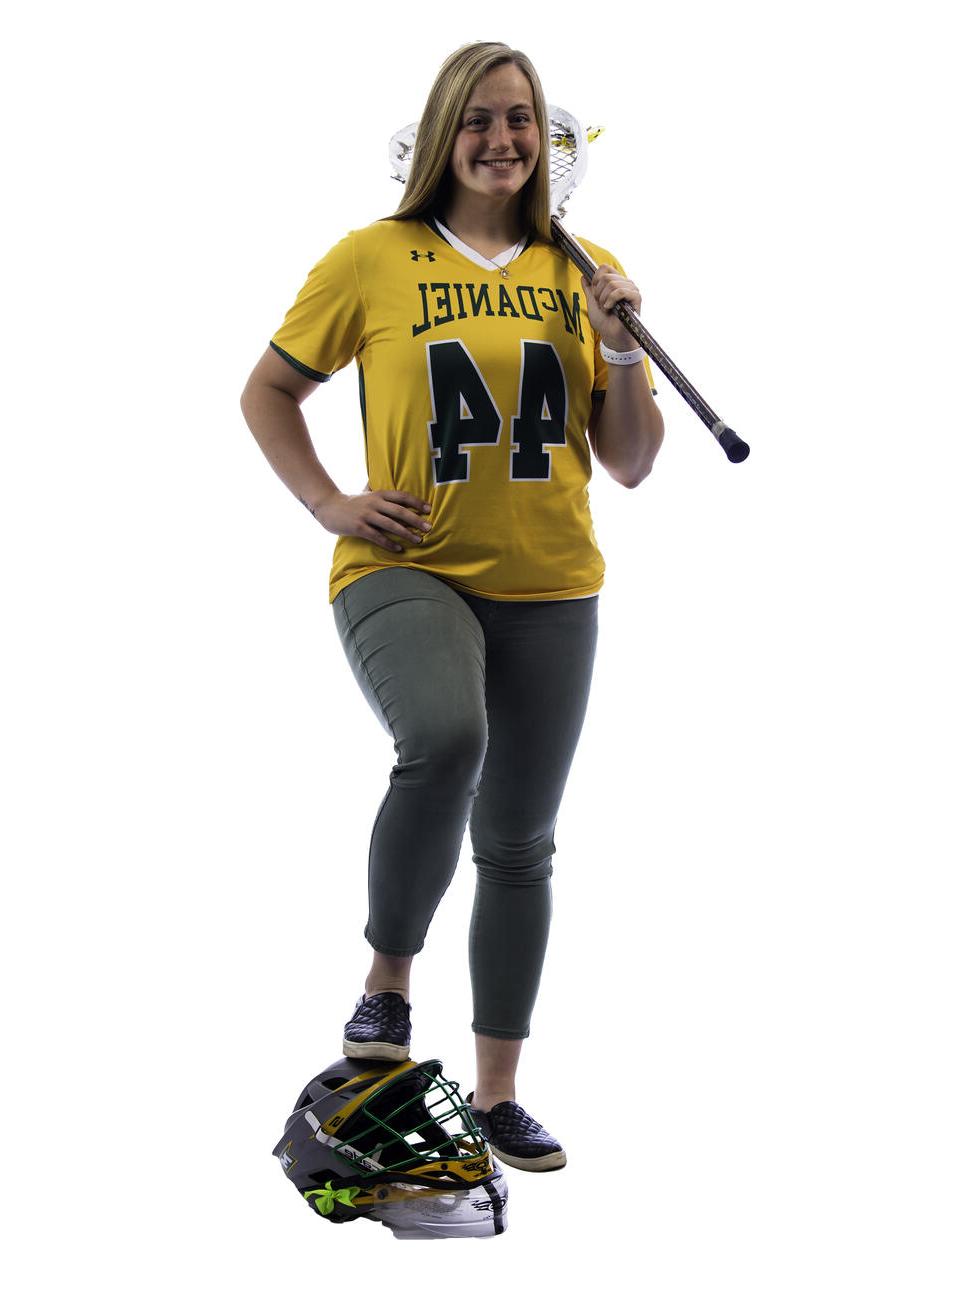 汉娜米勒 poses with a lacrosse stick over her shoulder and her foot on a helmet.